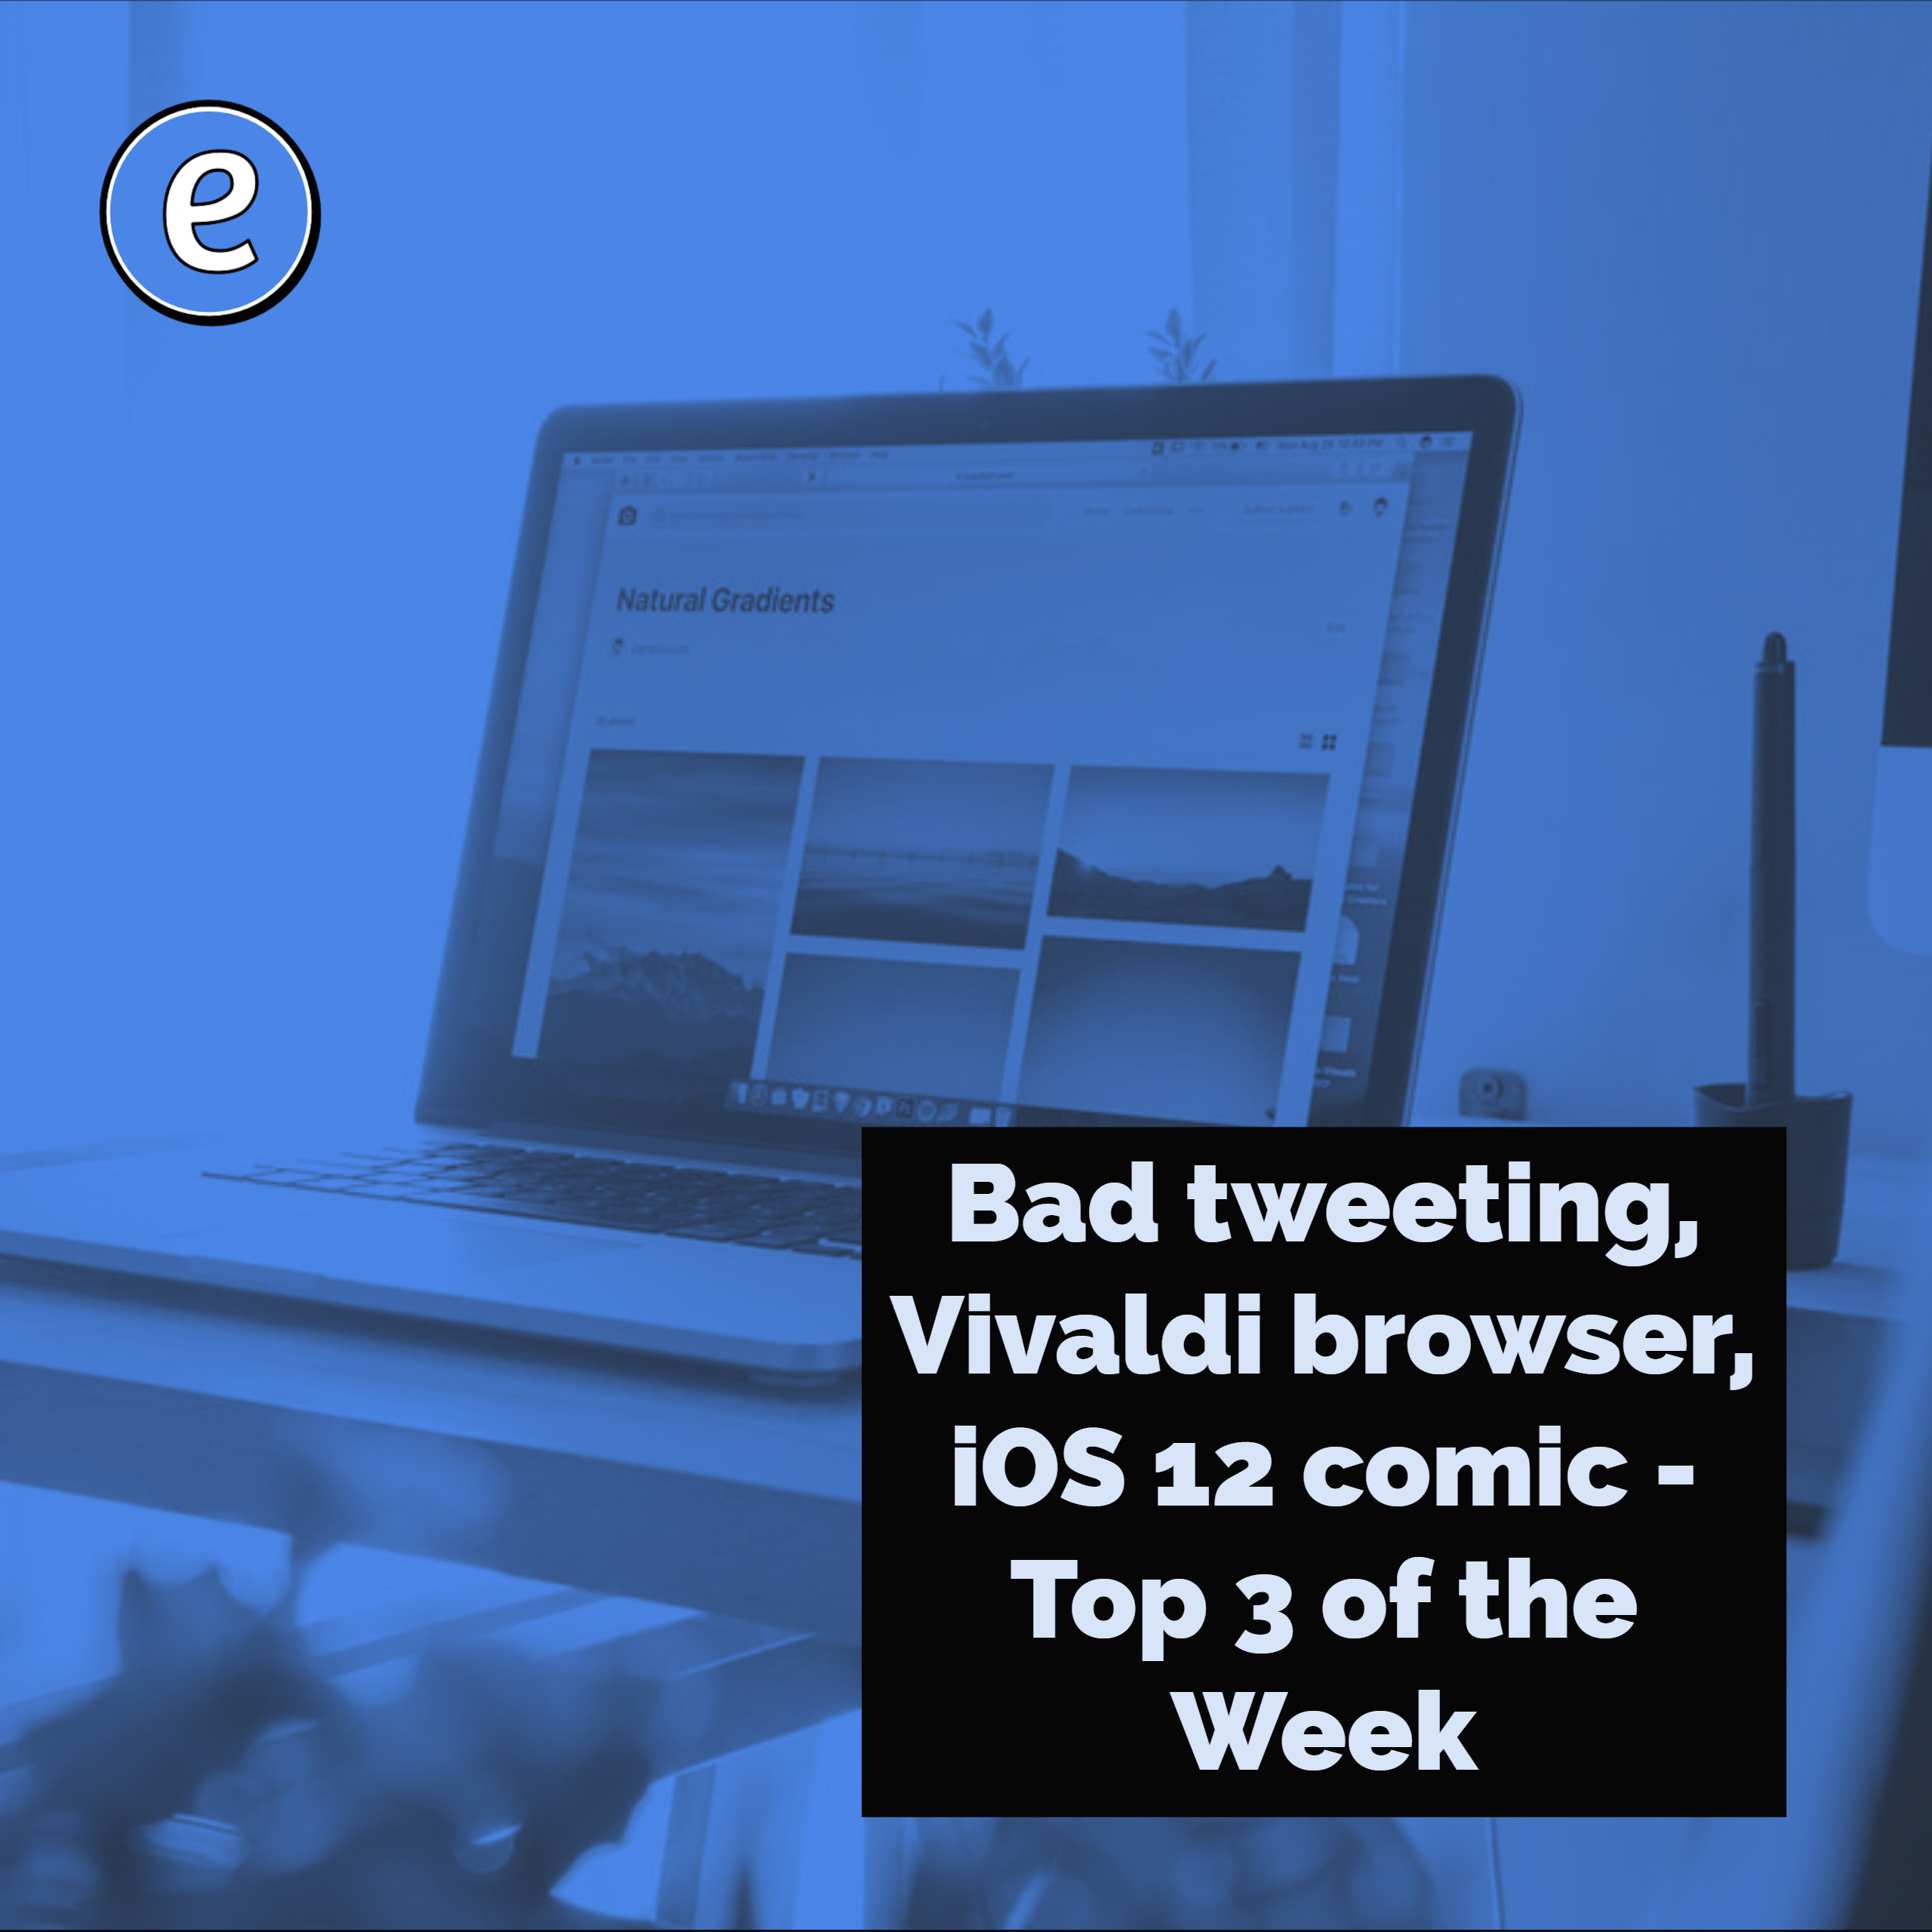 Bad tweeting, Vivaldi browser, iOS 12 comic – Top 3 of the Week